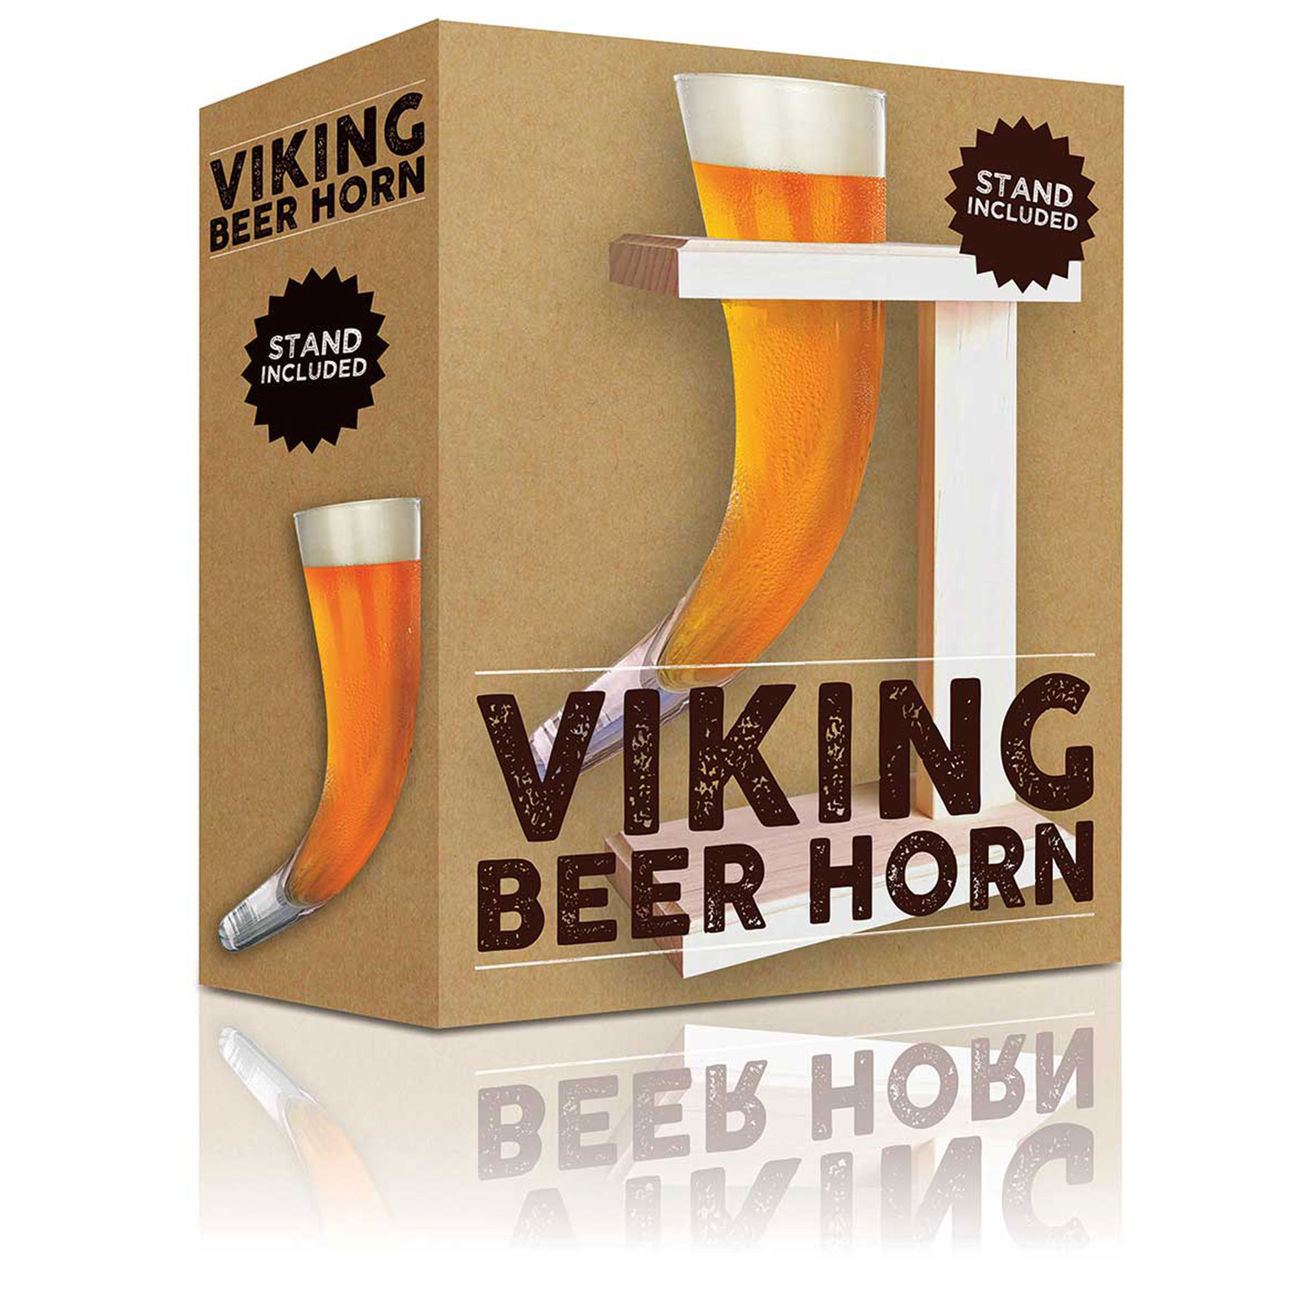 Wikinger Bier Horn 0,5 Liter inkl. Ständer Bild 1